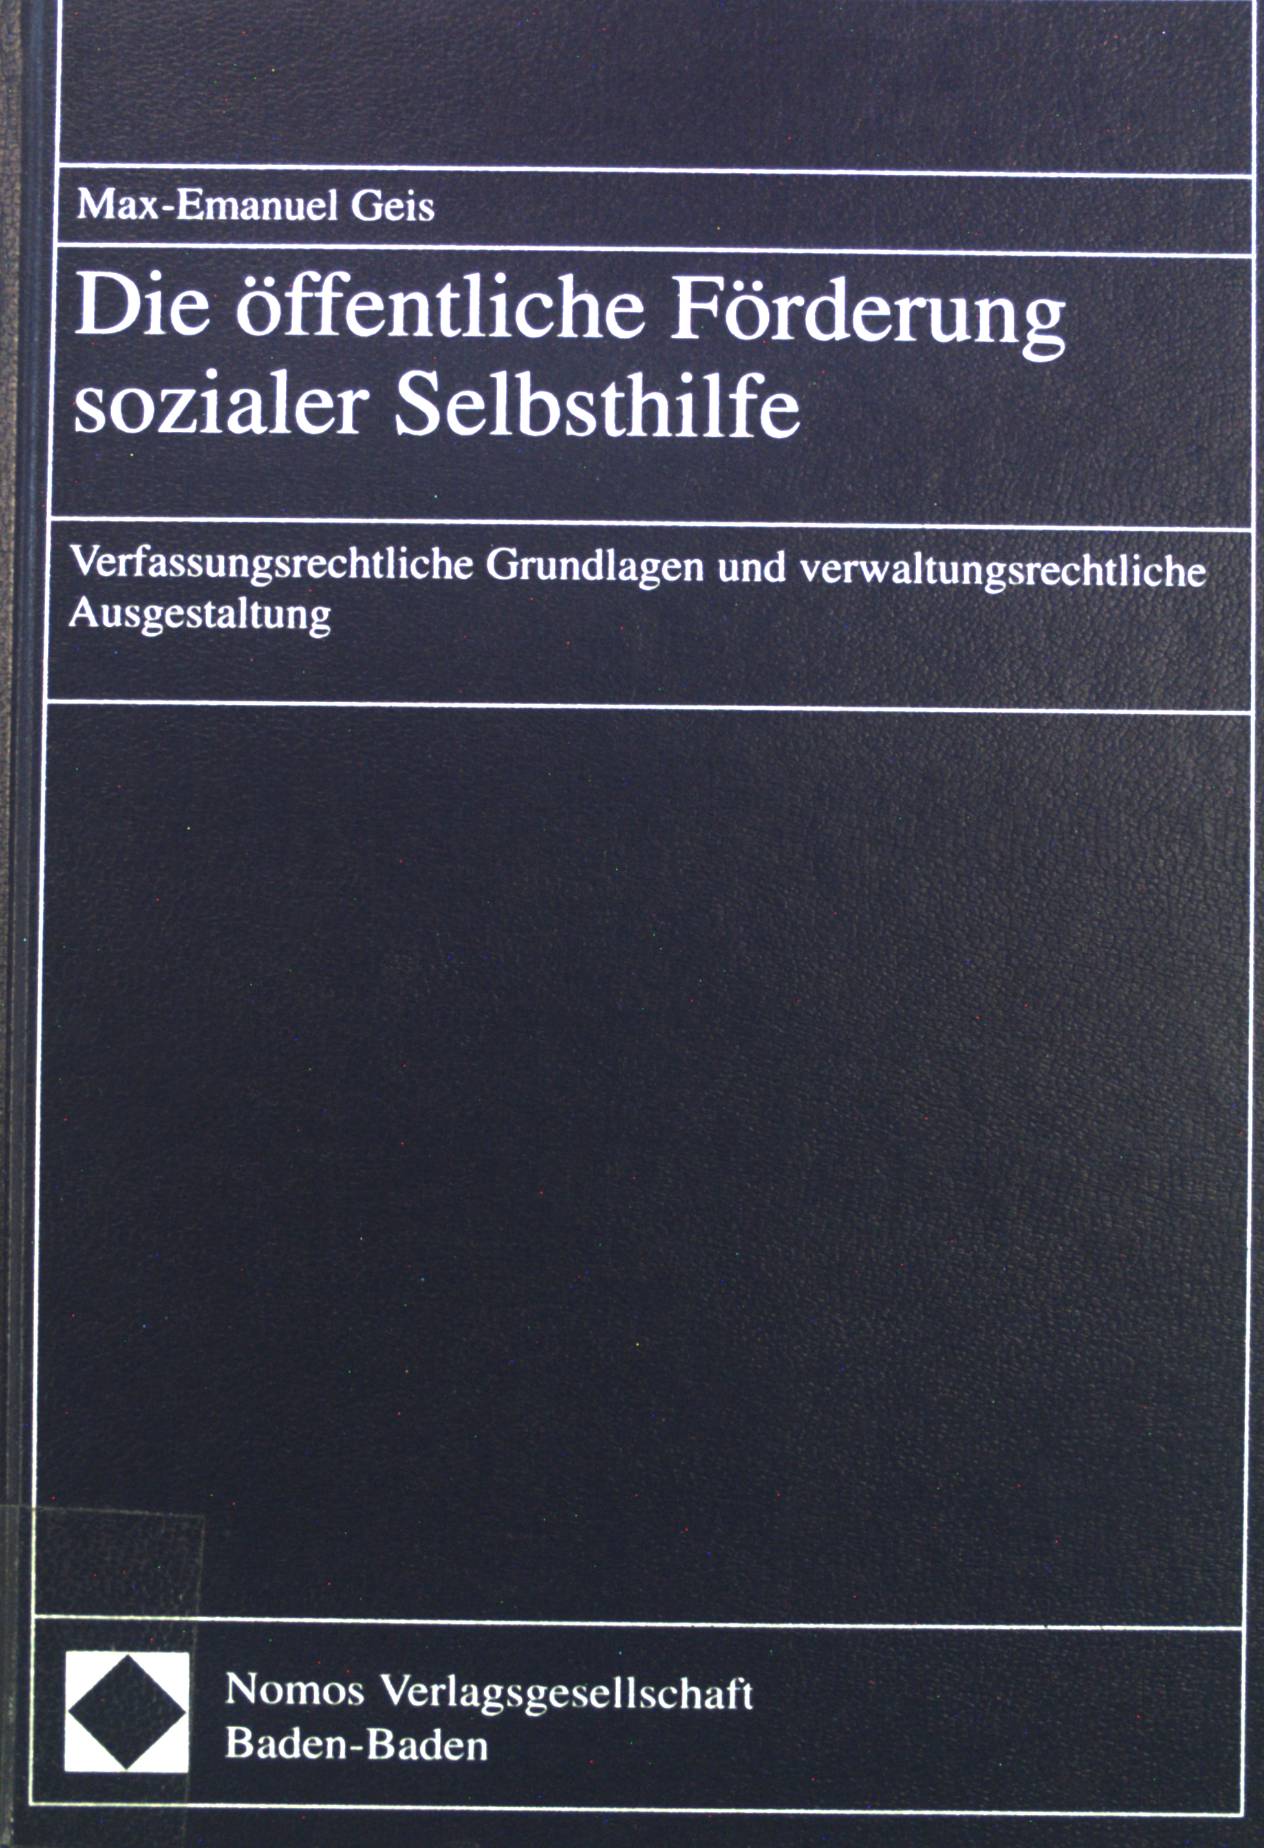 Die öffentliche Förderung sozialer Selbsthilfe : verfassungsrechtliche Grundlagen und verwaltungsrechtliche Ausgestaltung. - Geis, Max-Emanuel